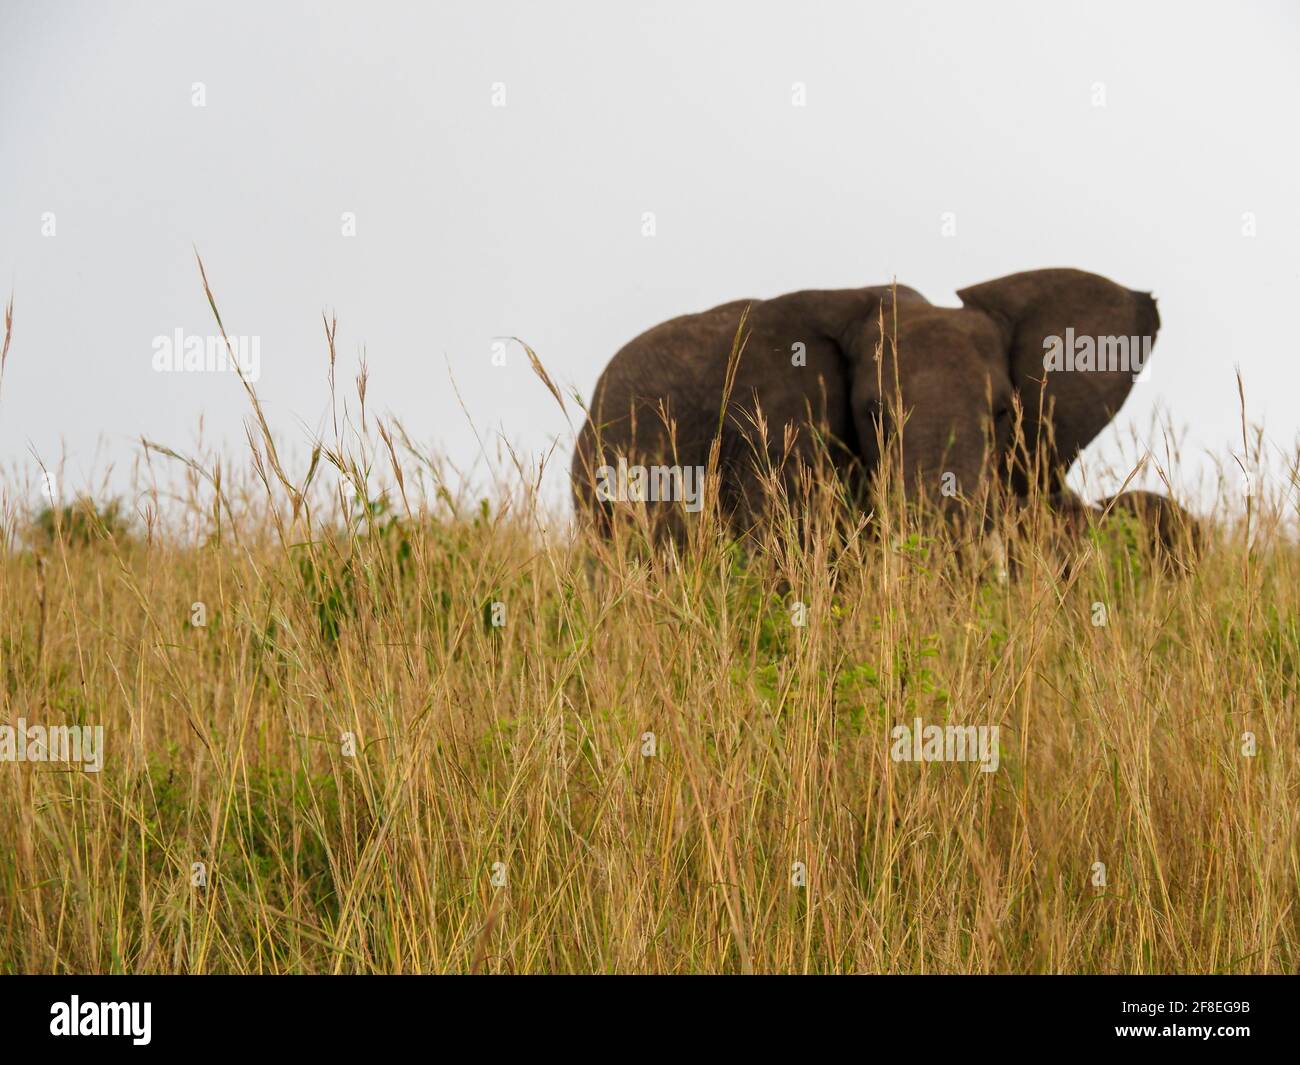 Masaai Mara, Kenia, Afrika - 26. Februar 2020: Afrikanische Elefanten im hohen Gras auf Safari, Masaai Mara Wildreservat Stockfoto